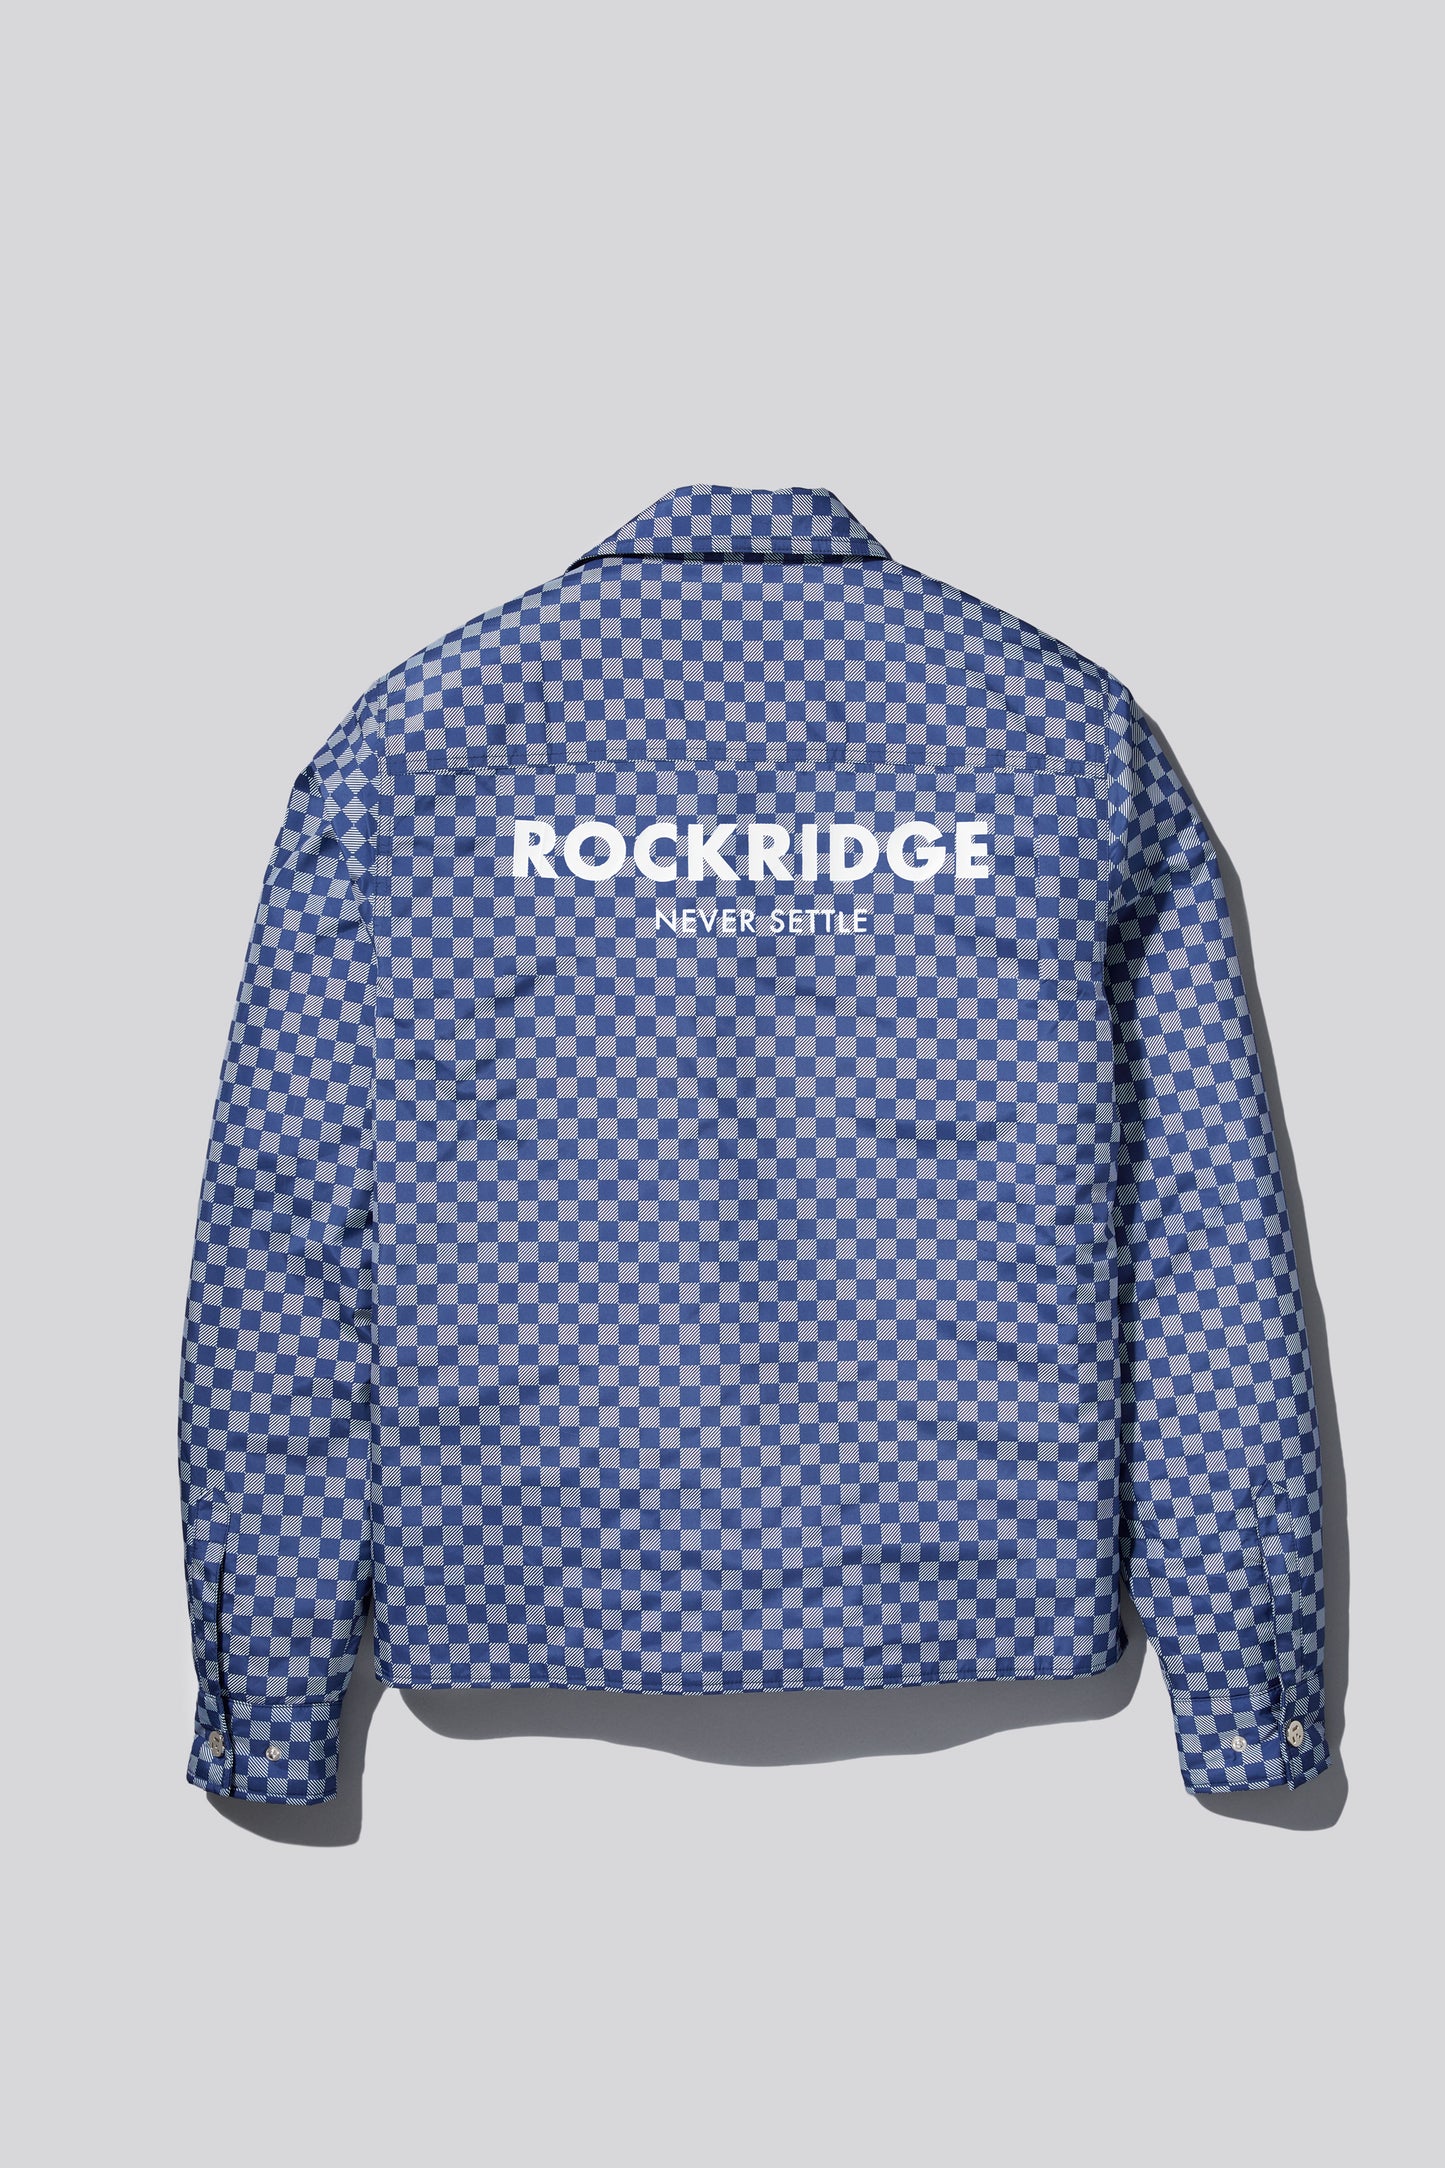 rockridge_jcoach_acket_back